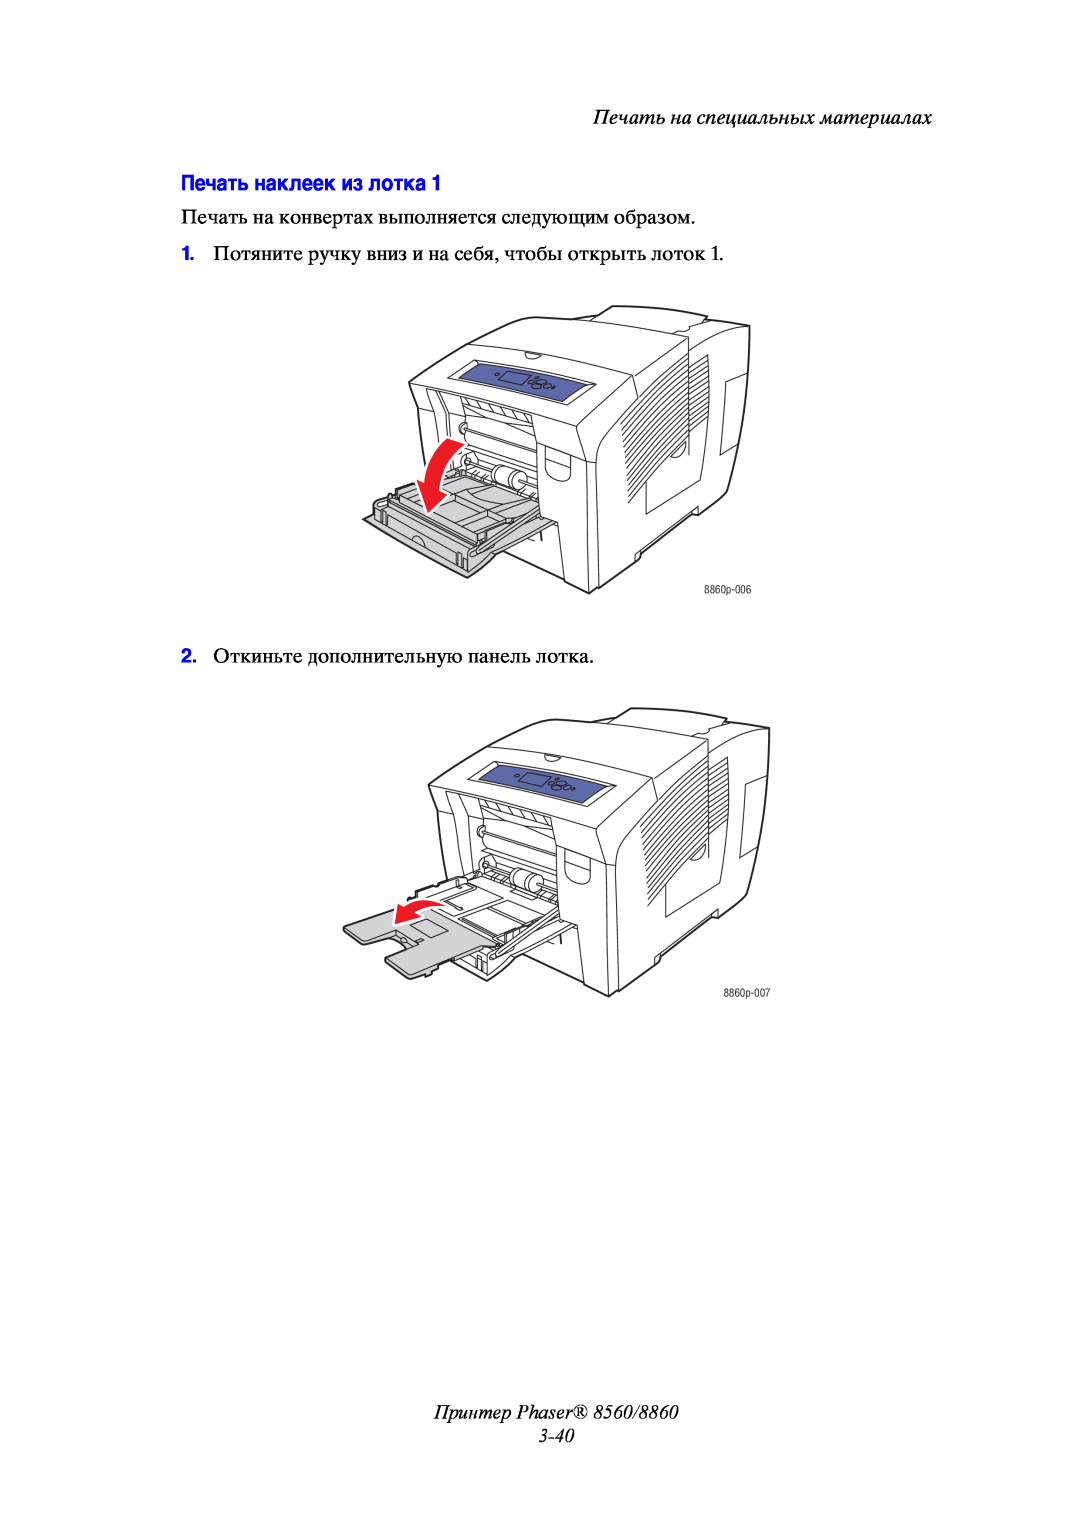 Xerox Печать наклеек из лотка, Принтер Phaser 8560/8860 3-40, Печать на специальных материалах, 8860p-006, 8860p-007 